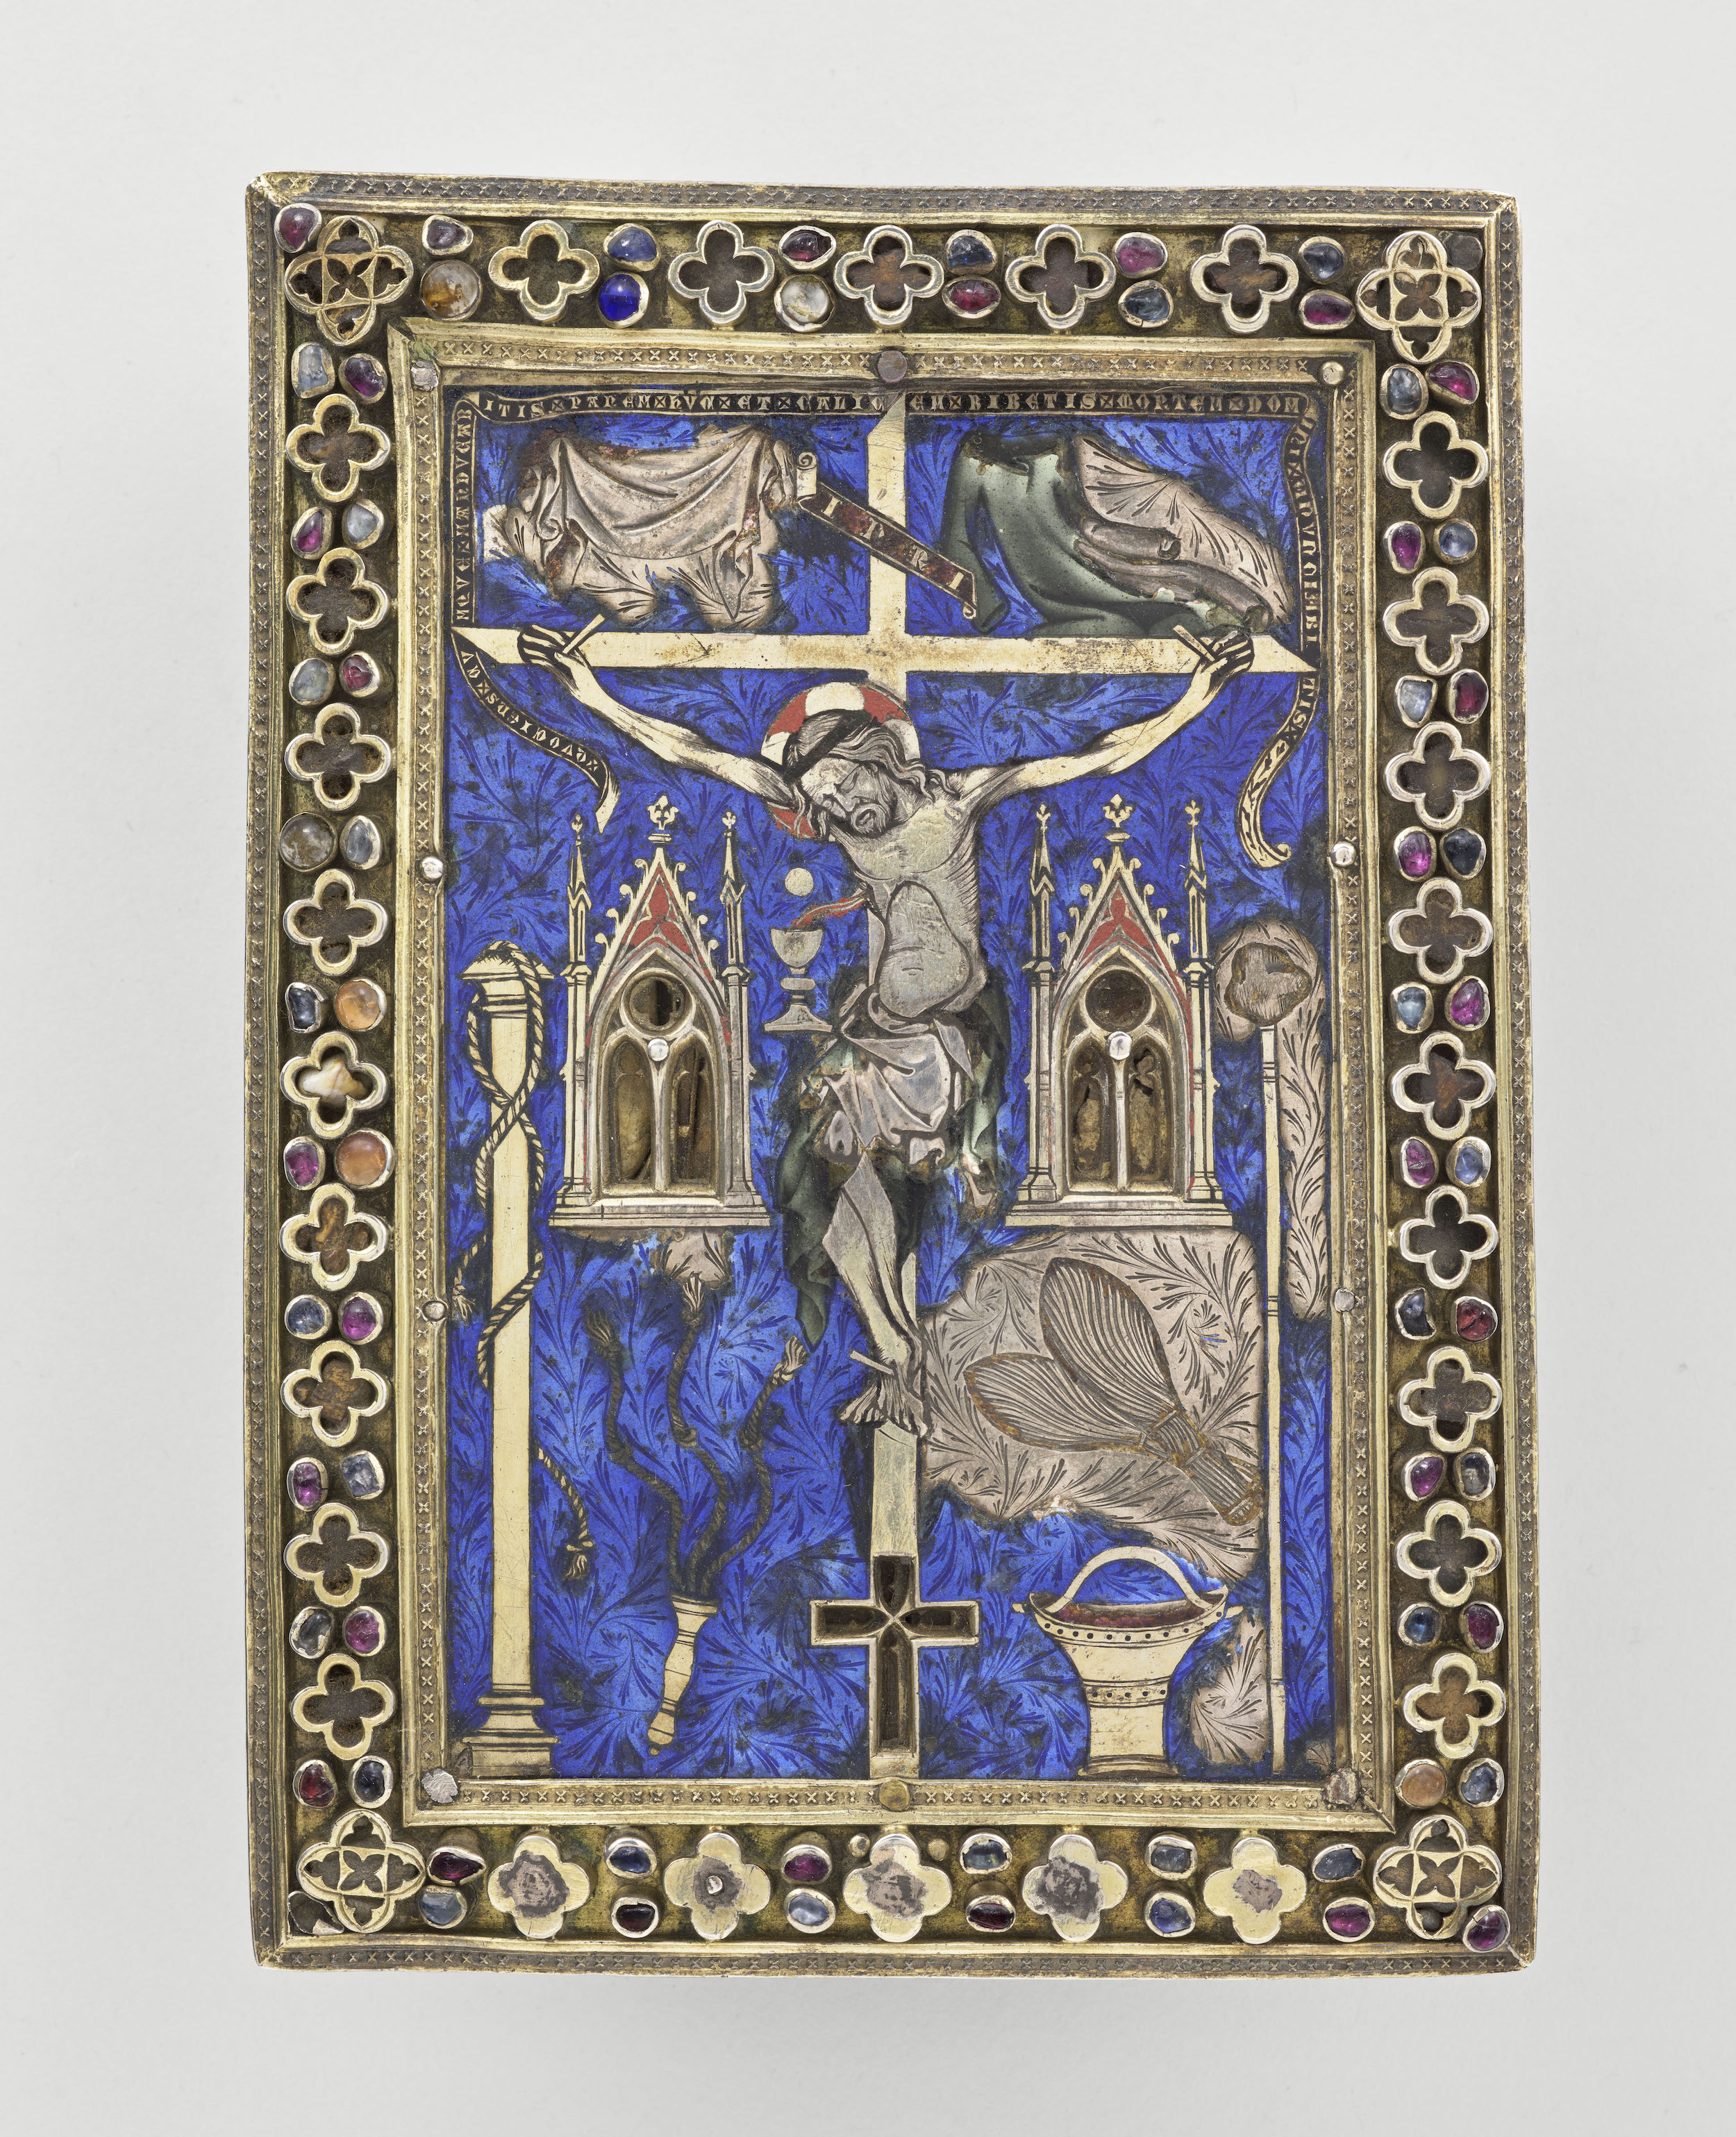 Расписной реликварий с Распятием by Неизвестный Художни - 15 век - 17.5 x 12.8 cm 